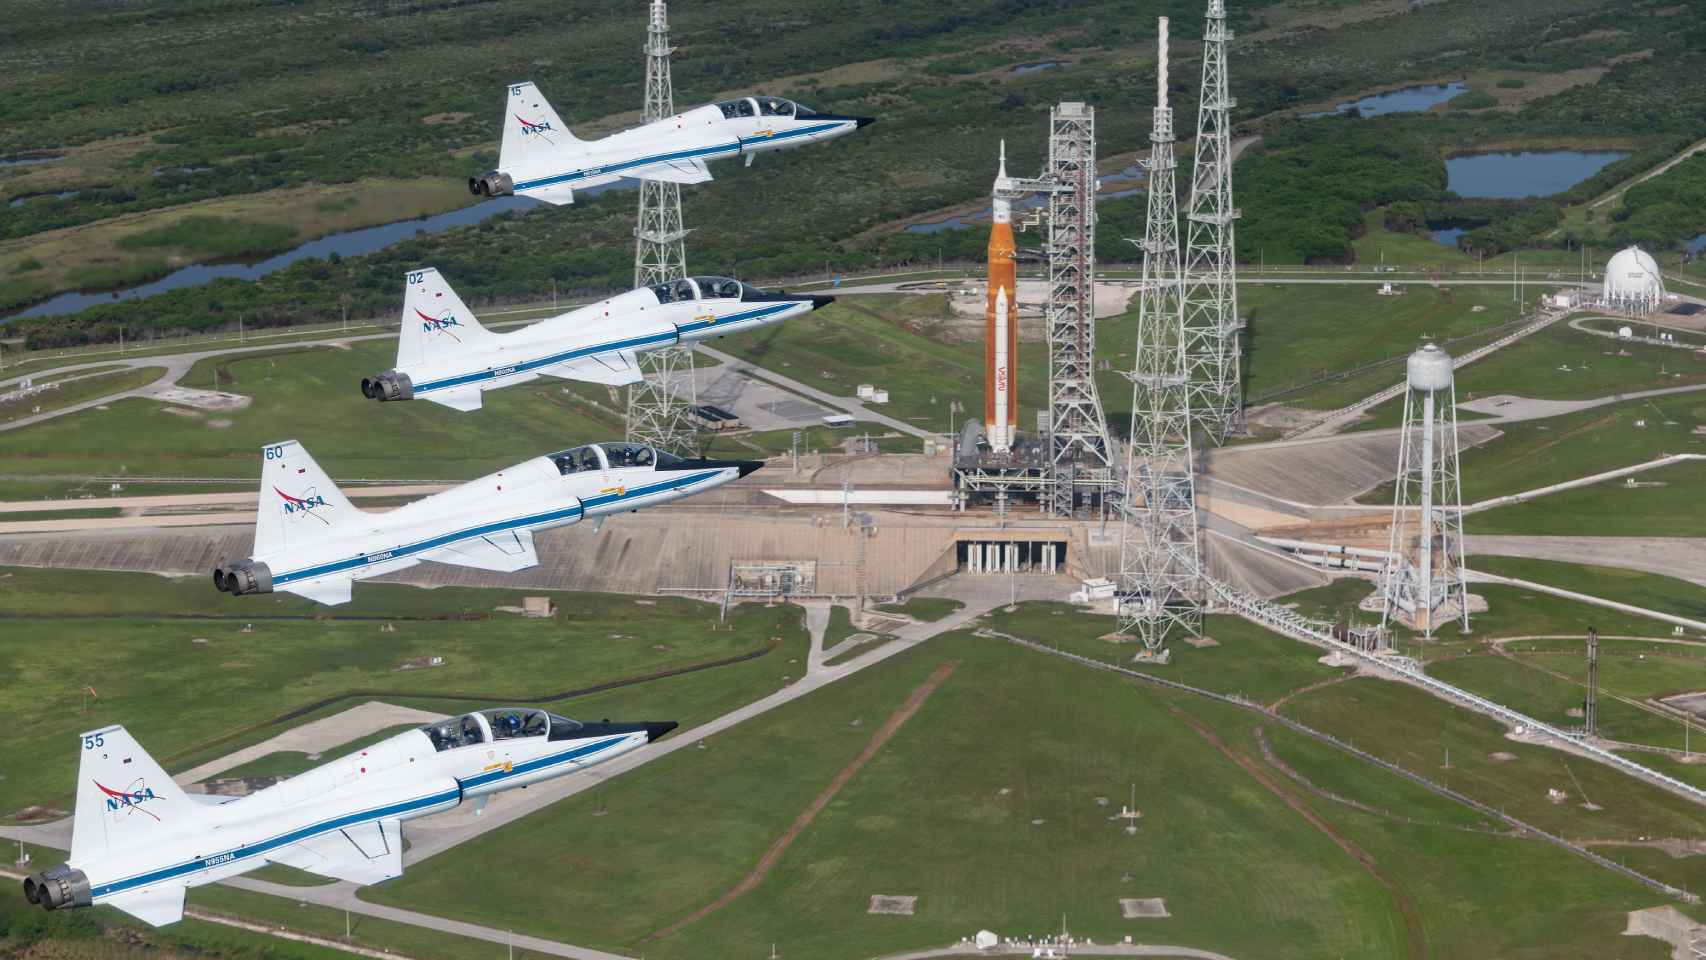 Cuatro aviones T-38 de la NASA sobrevuelan el lugar de lanzamiento del cohete SLS